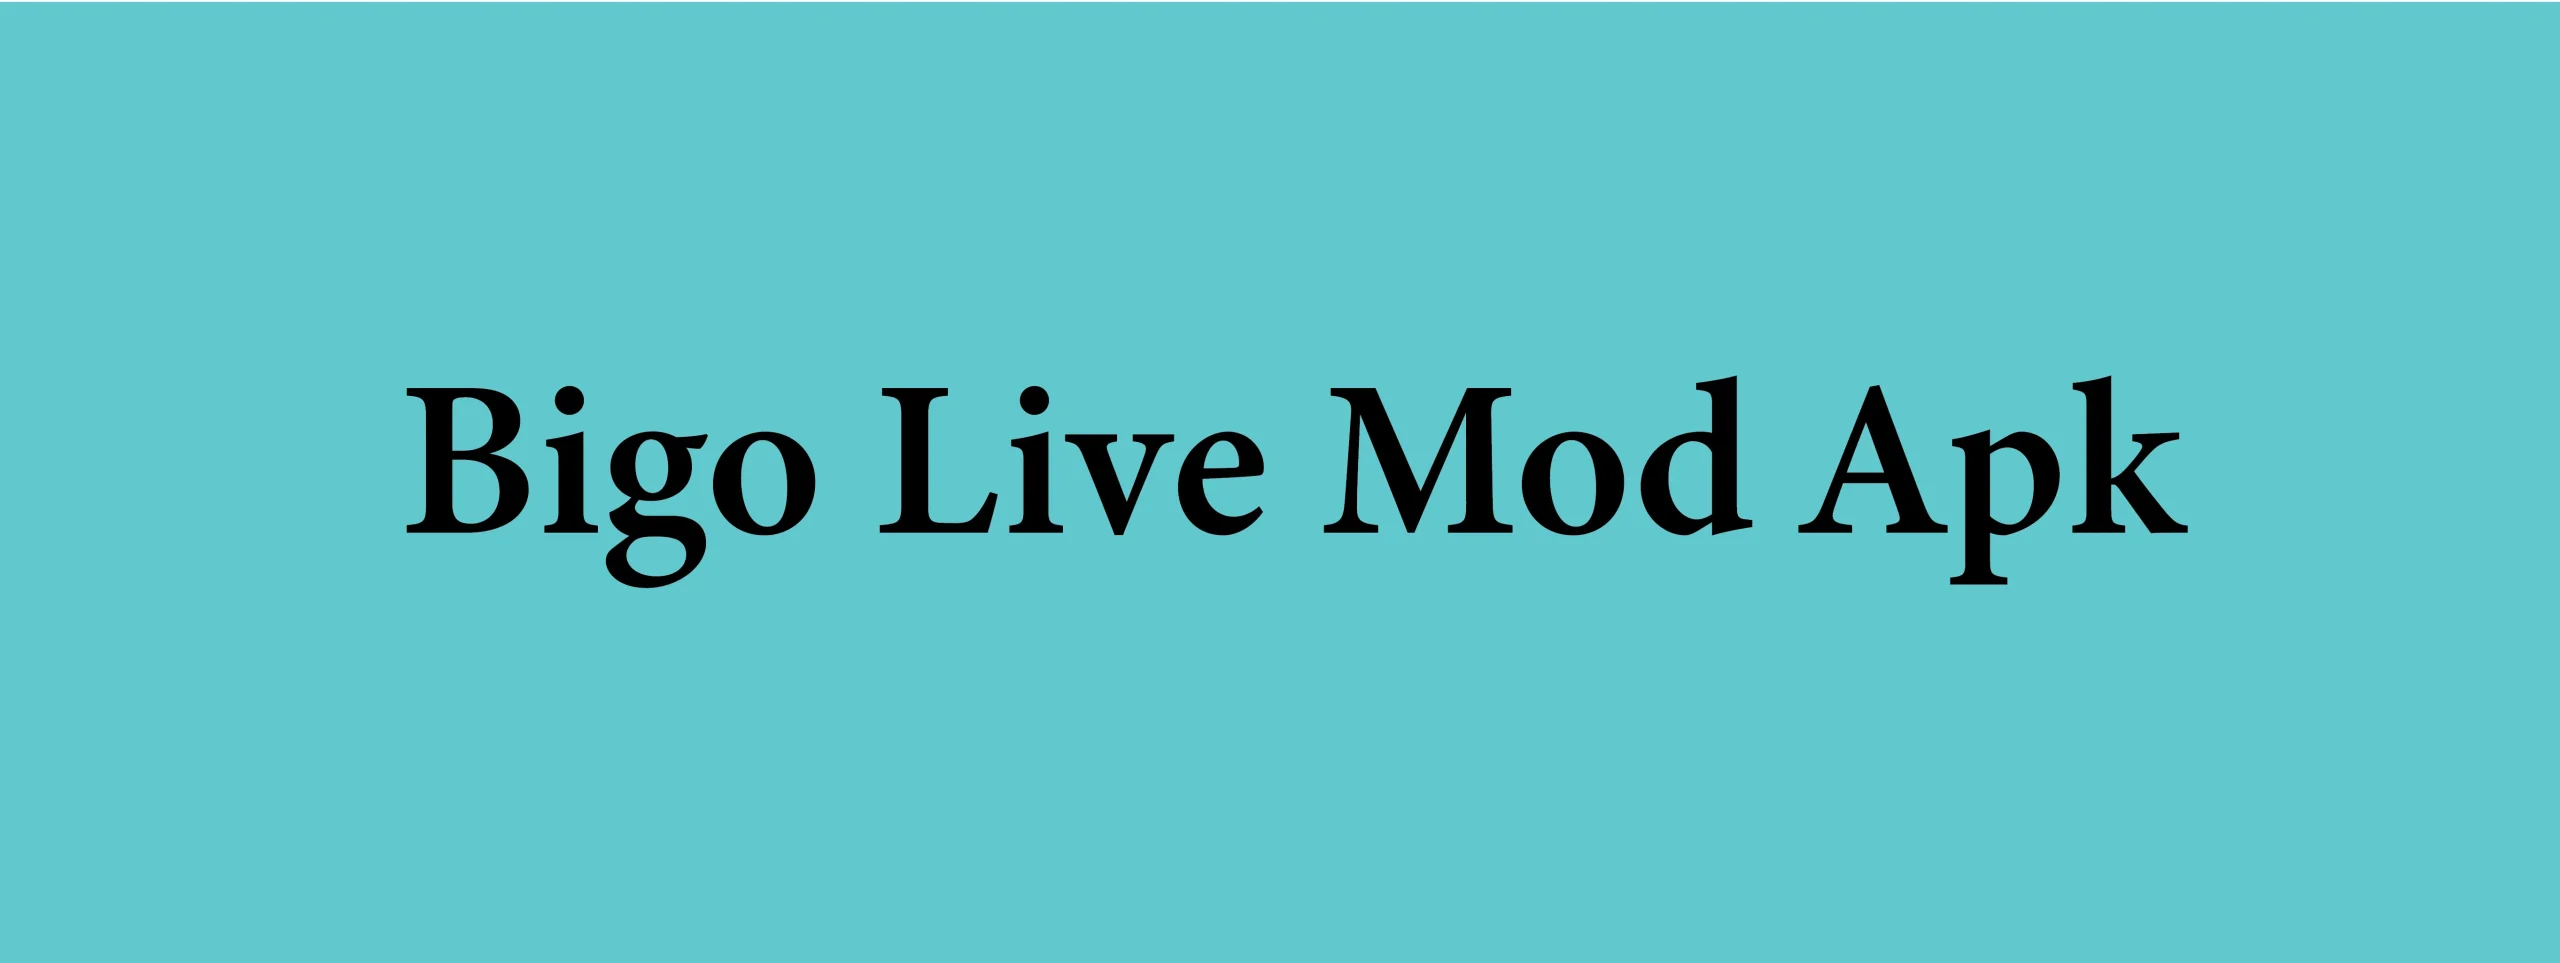 Bigo Live V6.6.0 MOD APK